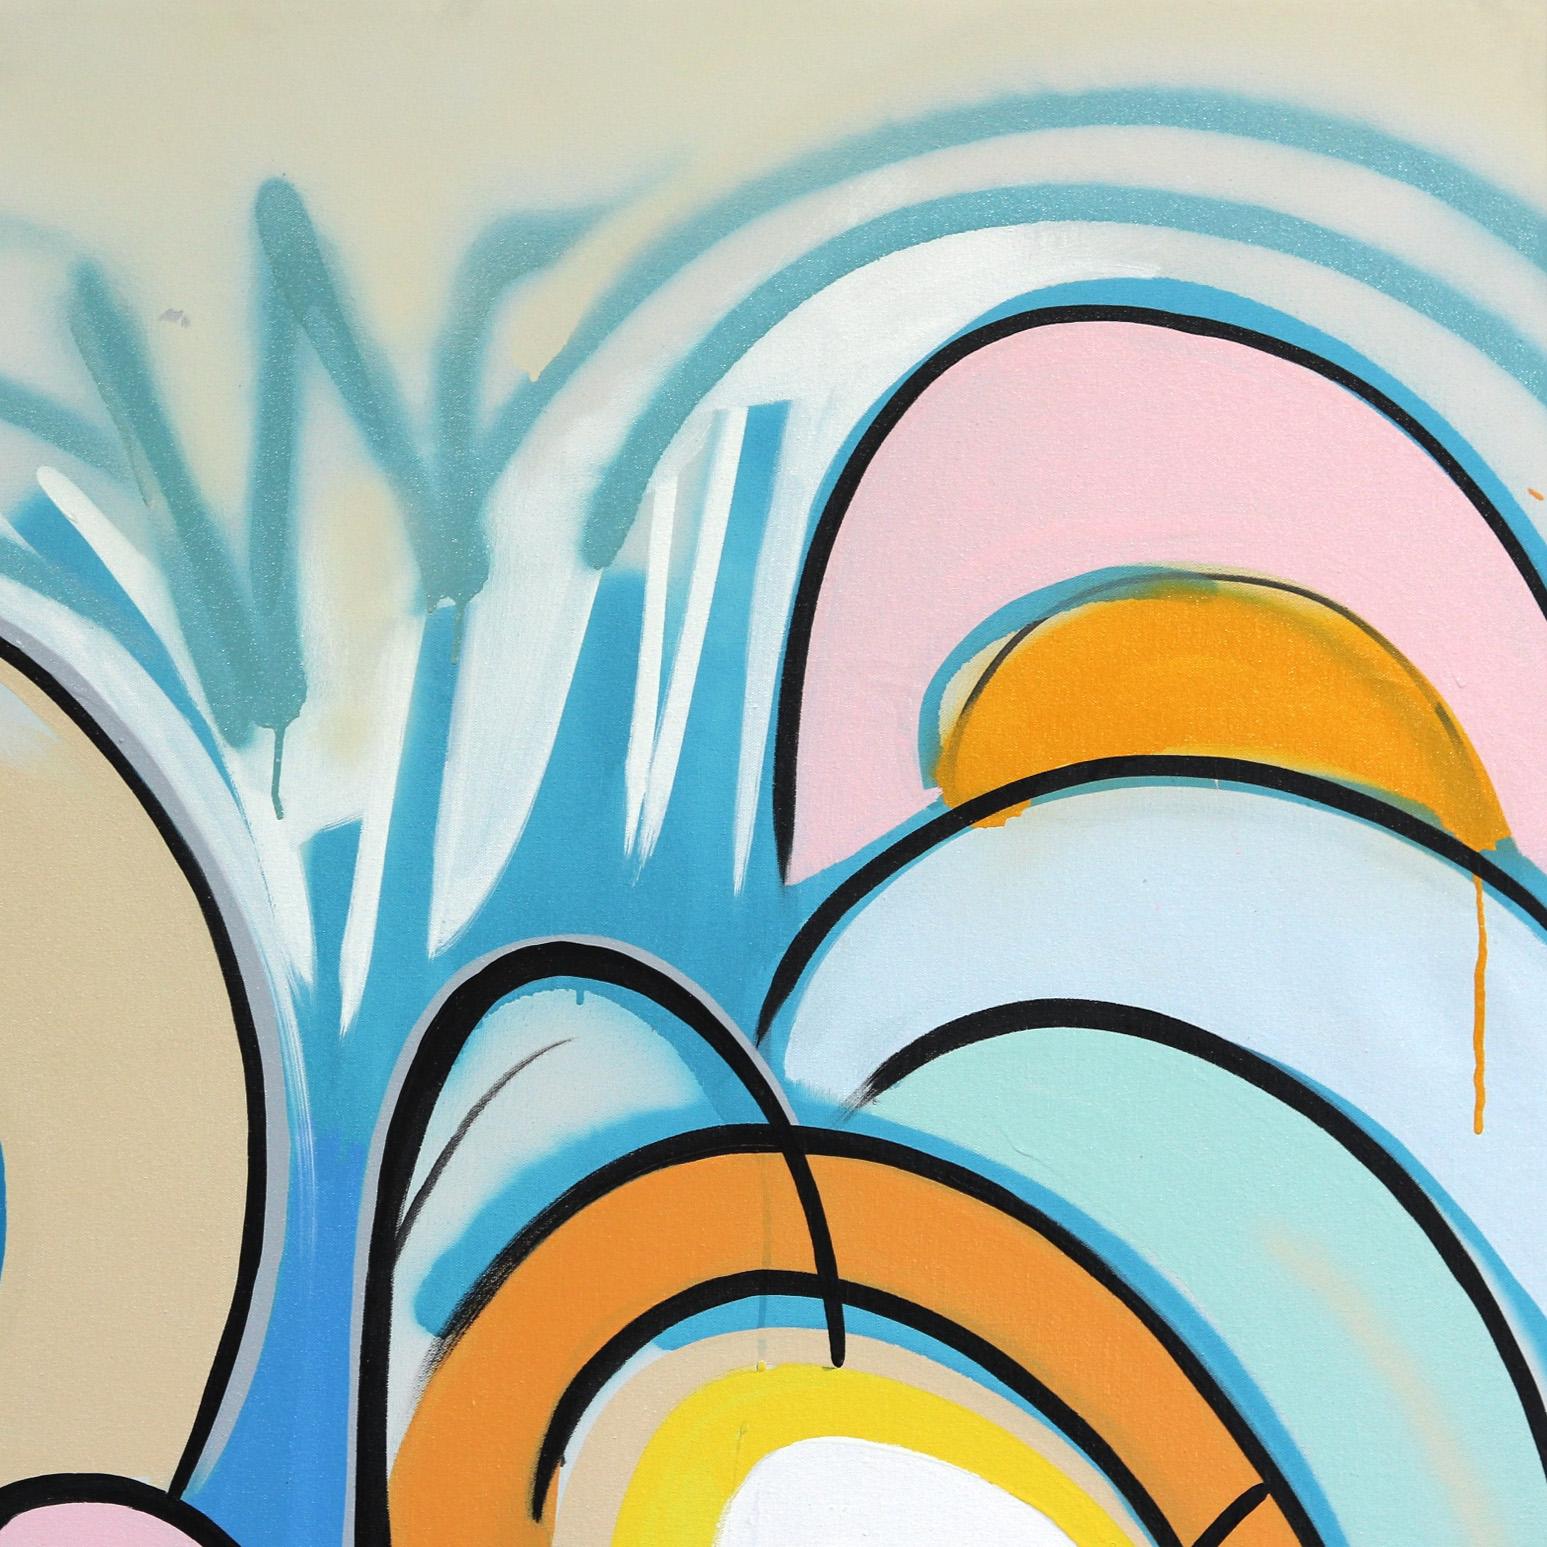 Die kubanisch-amerikanische Künstlerin Frankie Alfonso schafft verwobene Gemälde mit lebendigen Farben und spontanen, ausgewogenen Kompositionen. Sein Werk lässt sich am besten als eine Art automatisches Schreiben beschreiben, bei dem er einfache